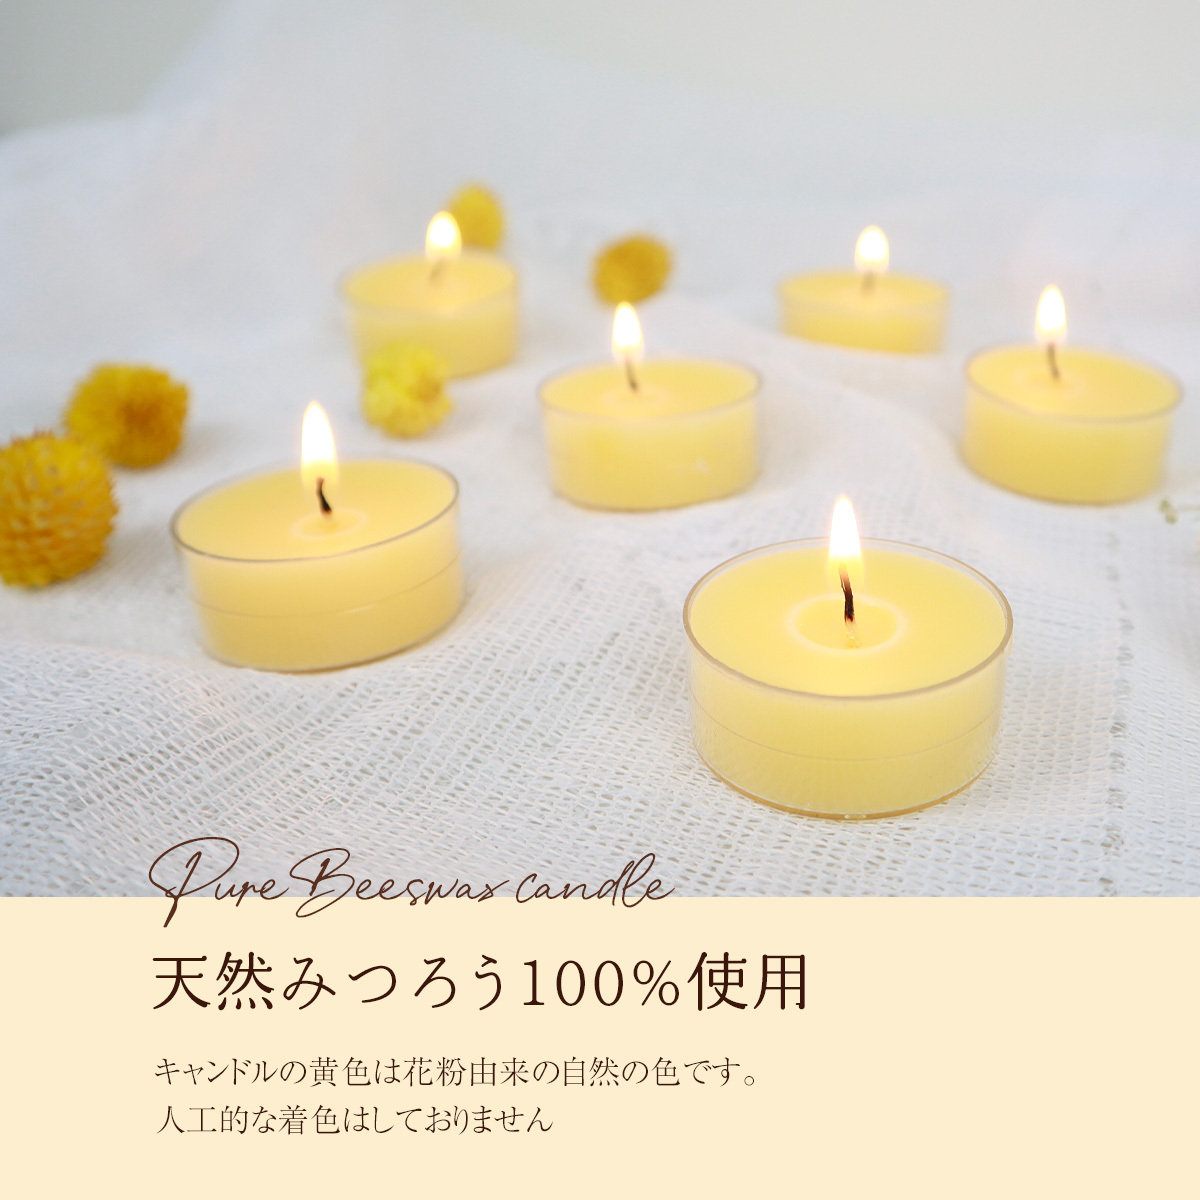 日本製 蜜蝋 ティーライトキャンドル 6個セット みつろう ミツロウ ろうそく 和ろうそく 蝋燭 ティーライトティン ヨガ ワックス